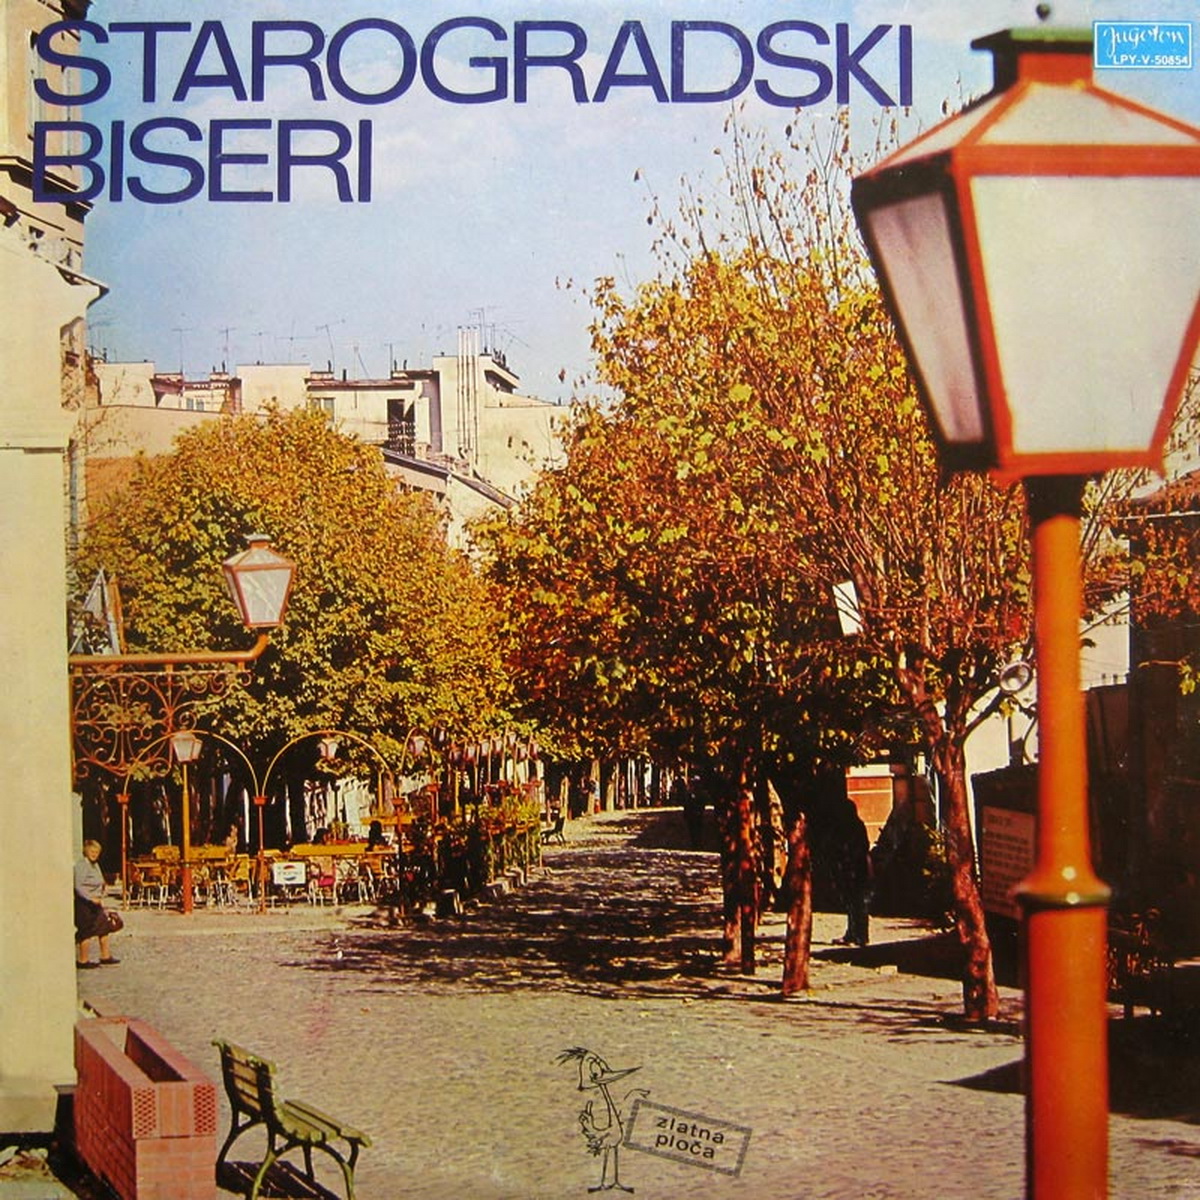 VA 1972 Starogradski biseri A